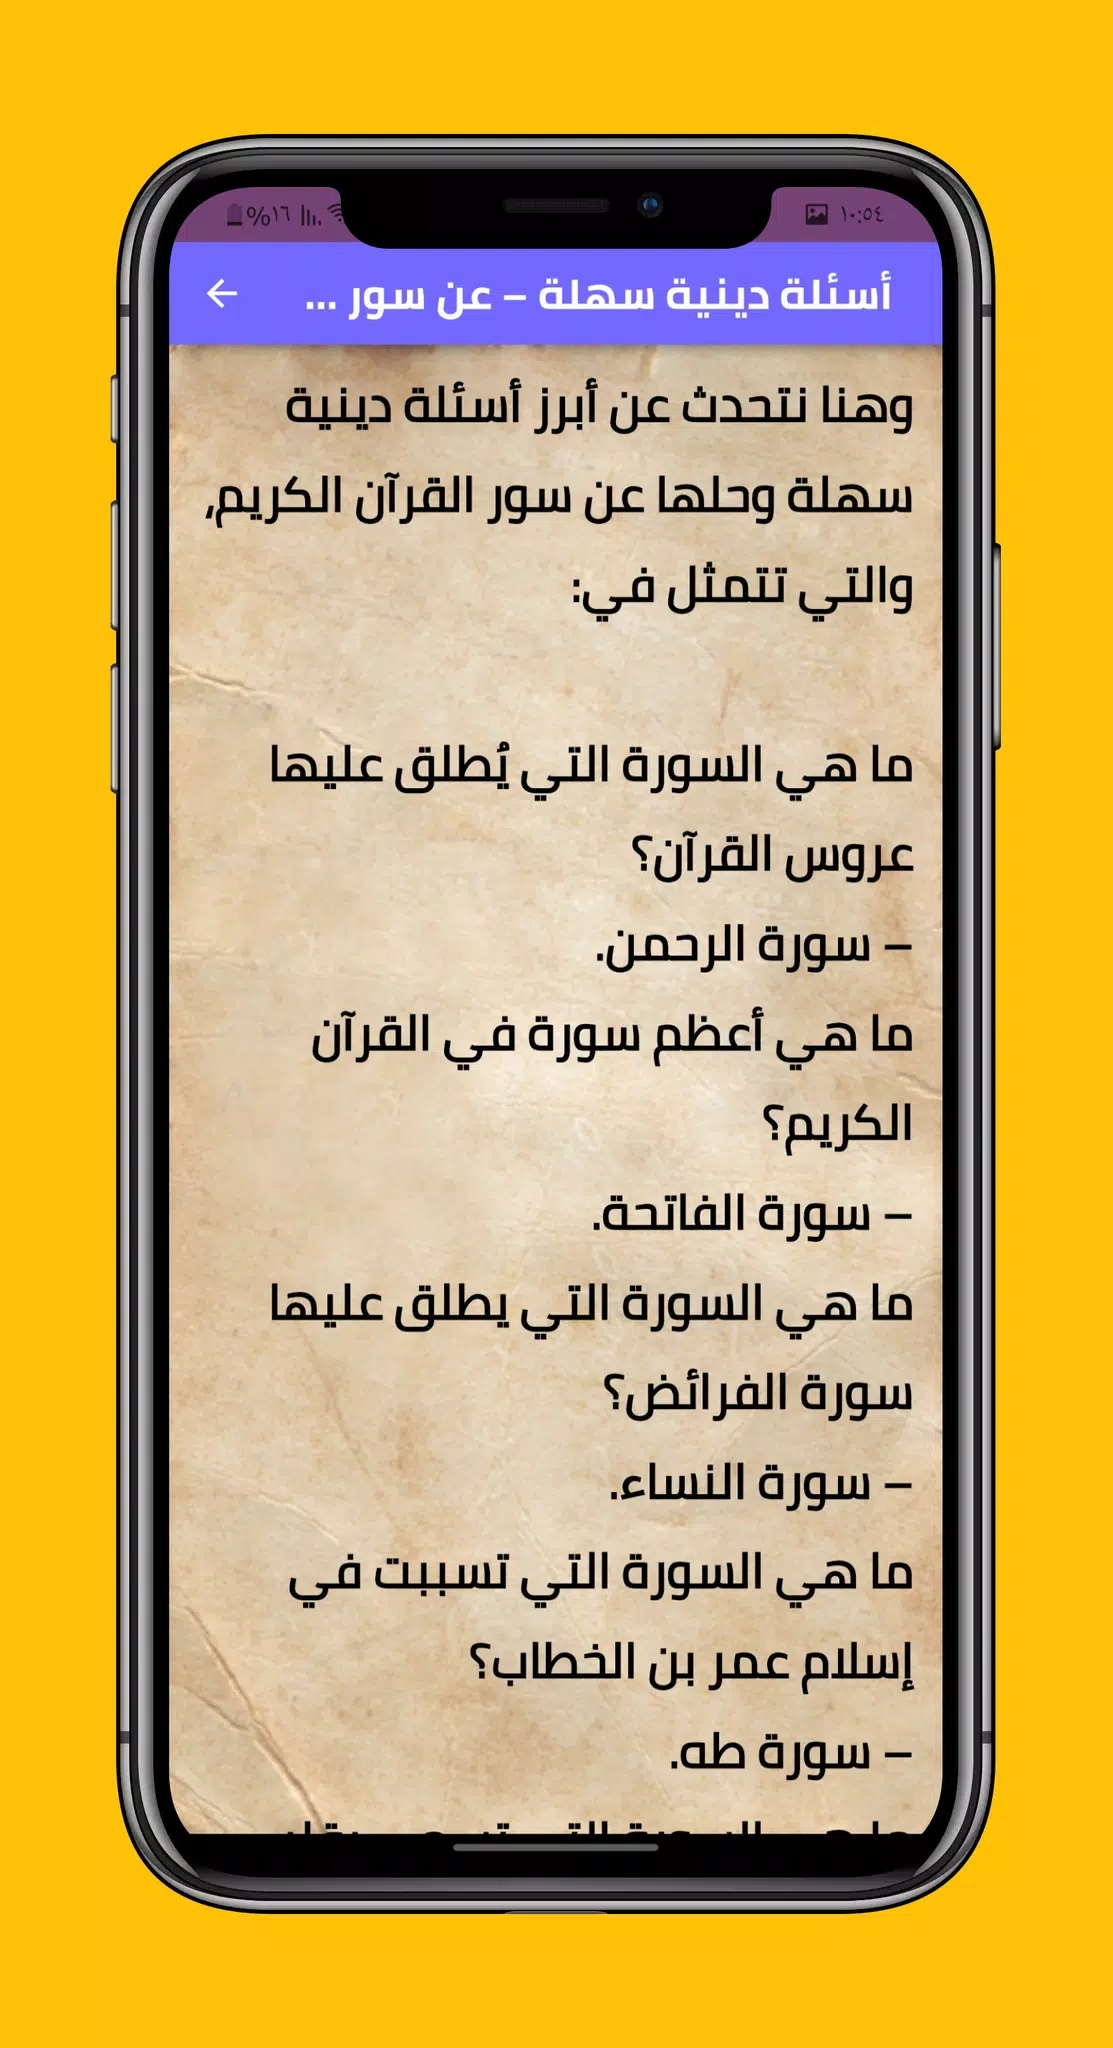 اسئلة دينية اسلامية واجوبة APK for Android Download